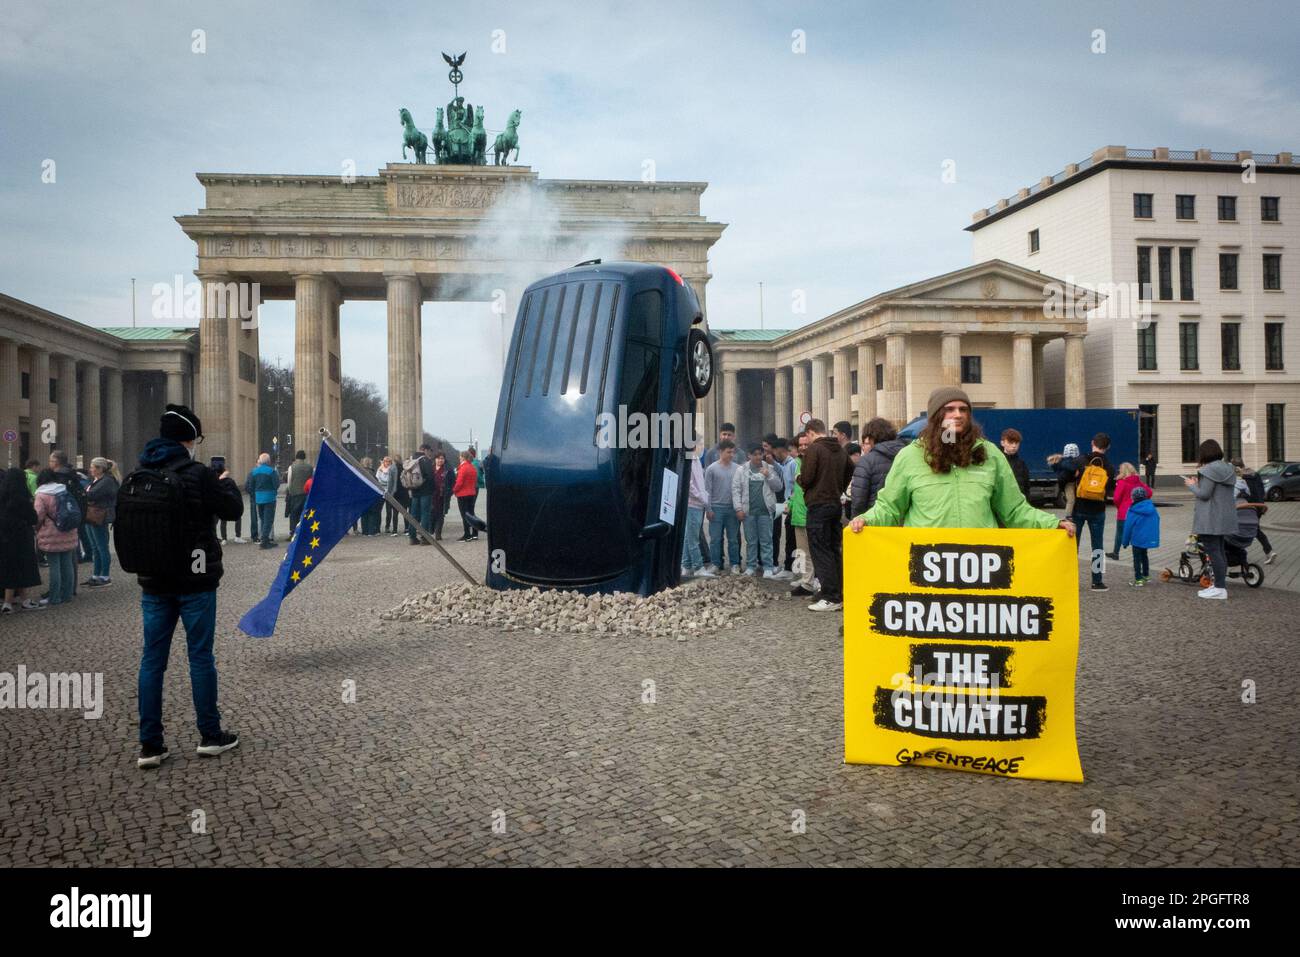 Accident de voiture : les militants écologistes de Greenpeace ont organisé une manifestation publique contre la politique climatique européenne devant la porte de Brandebourg de Berlin et ont placé une voiture écrasée sur le trottoir. « Le sommet s'écrouler dans le climat », lit une affiche. Ils exigent une action urgente des décideurs européens en matière de climat. Actuellement, les politiciens et les lobbyistes de l'industrie à Berlin et Bruxelles se disputent l'avenir des voitures à essence. Banque D'Images